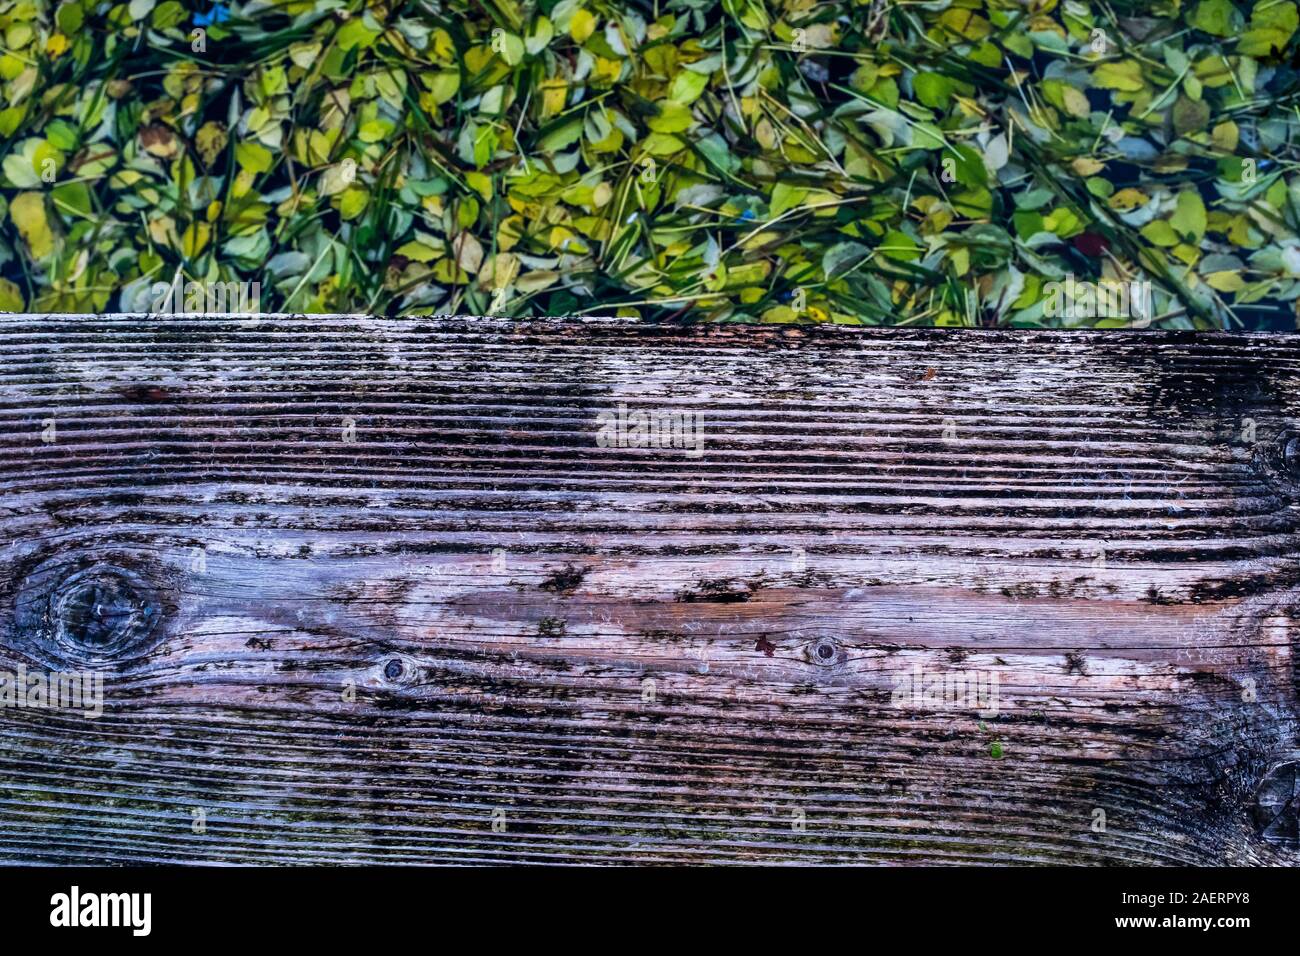 Von einer hölzernen Fußweg, einen näheren Blick auf einem dicken Teppich der Blätter pads schwimmend auf dem See Wasser. Fokus auf den Vordergrund auf dem Holzbrett. Stockfoto